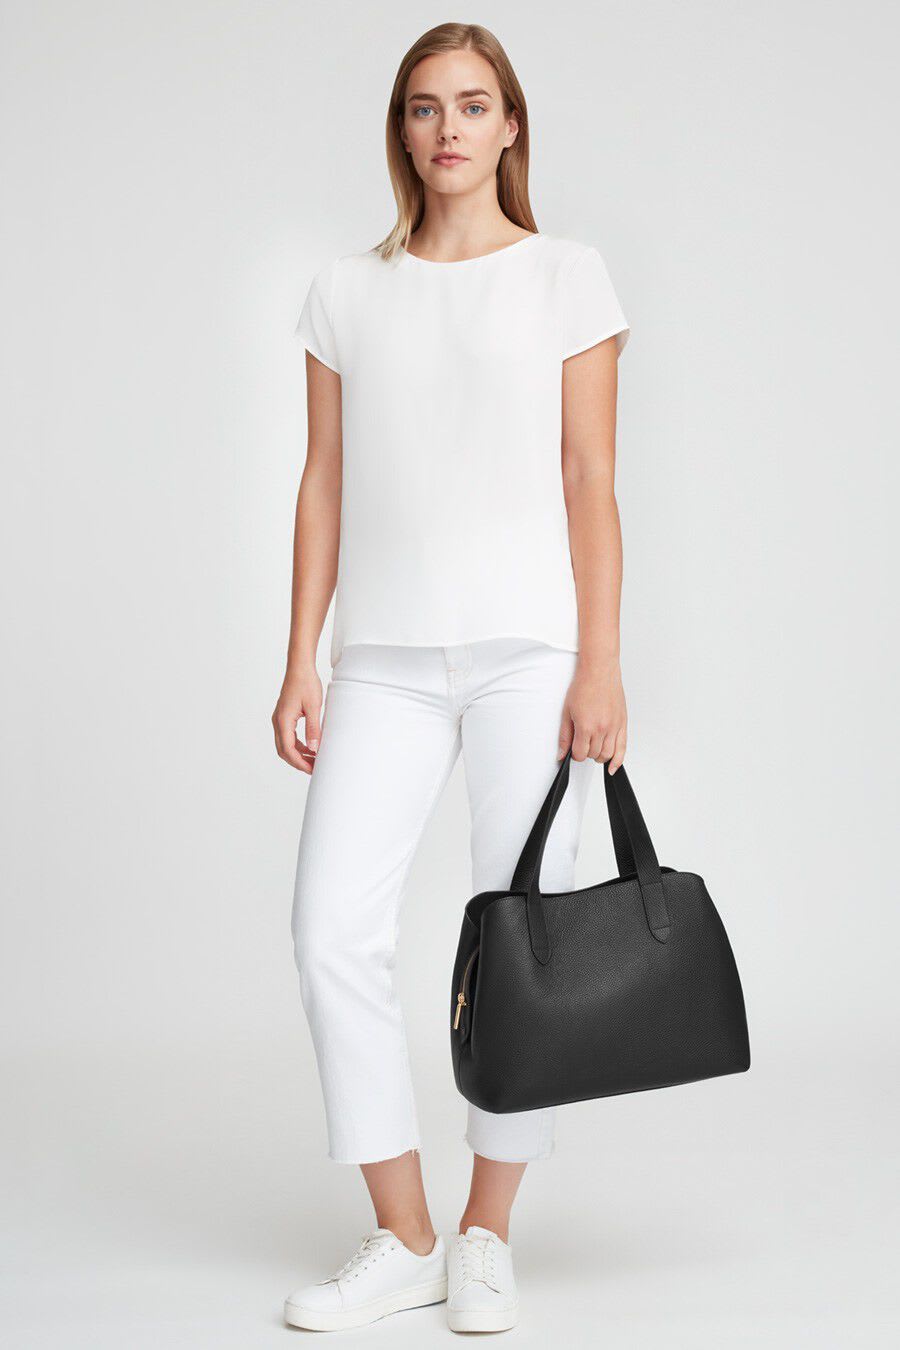 Cuyana Revive - Top Handle Crossbody Bag  Crossbody bag, Leather crossbody  bag, Bags